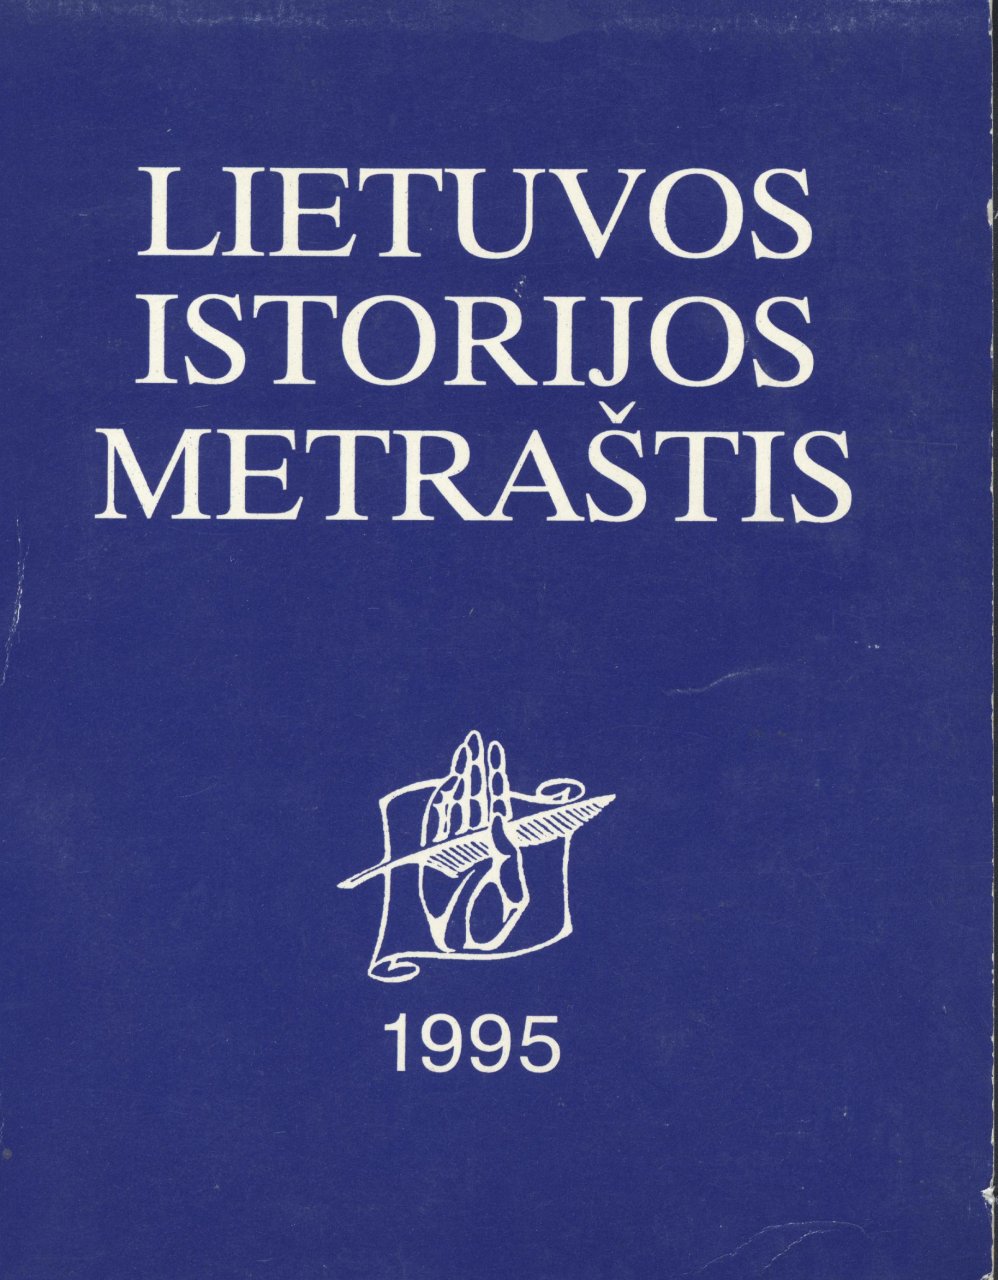 Lietuvos istorijos metraštis 1995 metai 